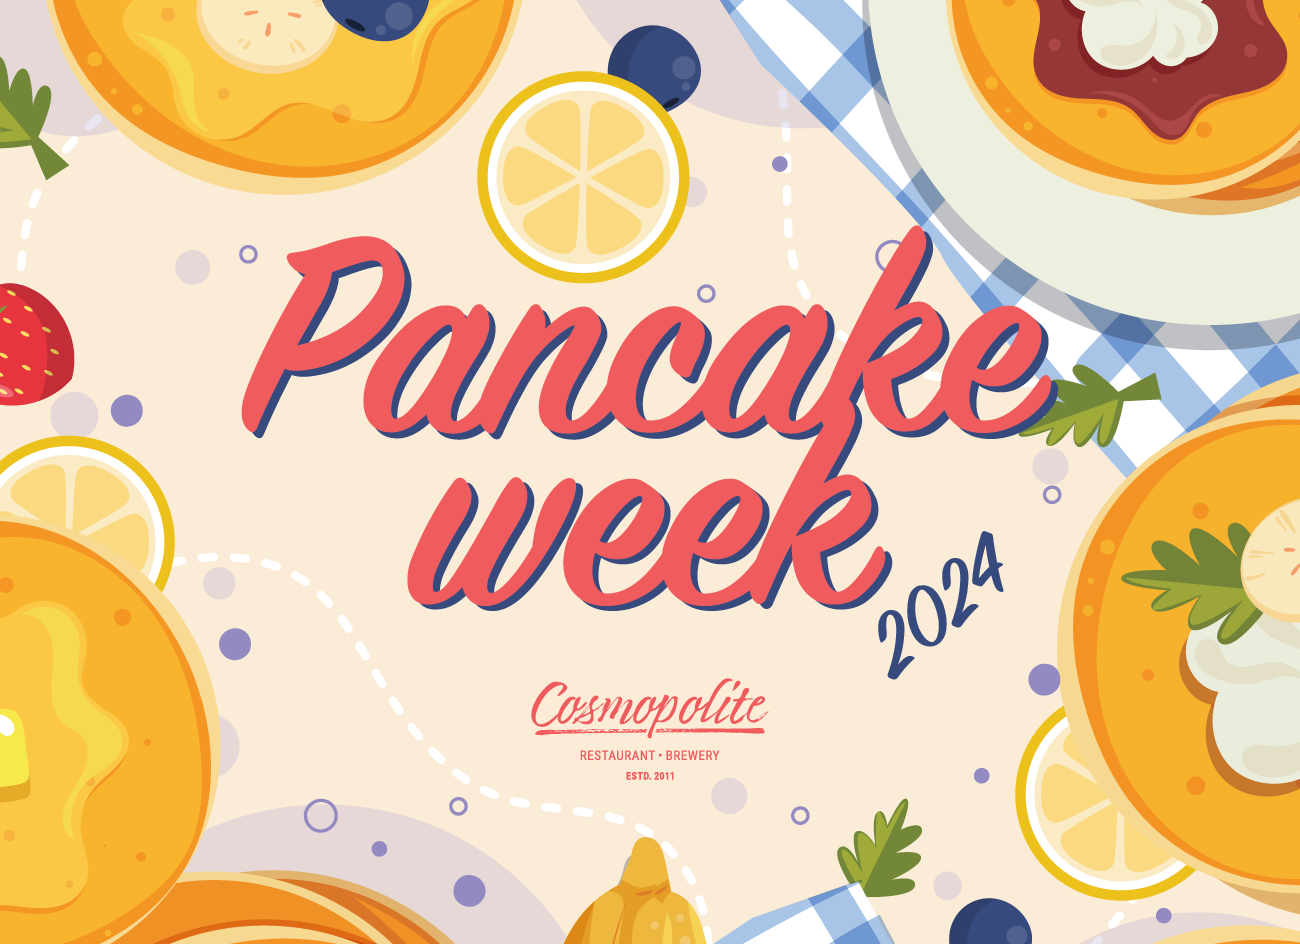 Pancake week at Cosmopolite: a lot of pancakes!